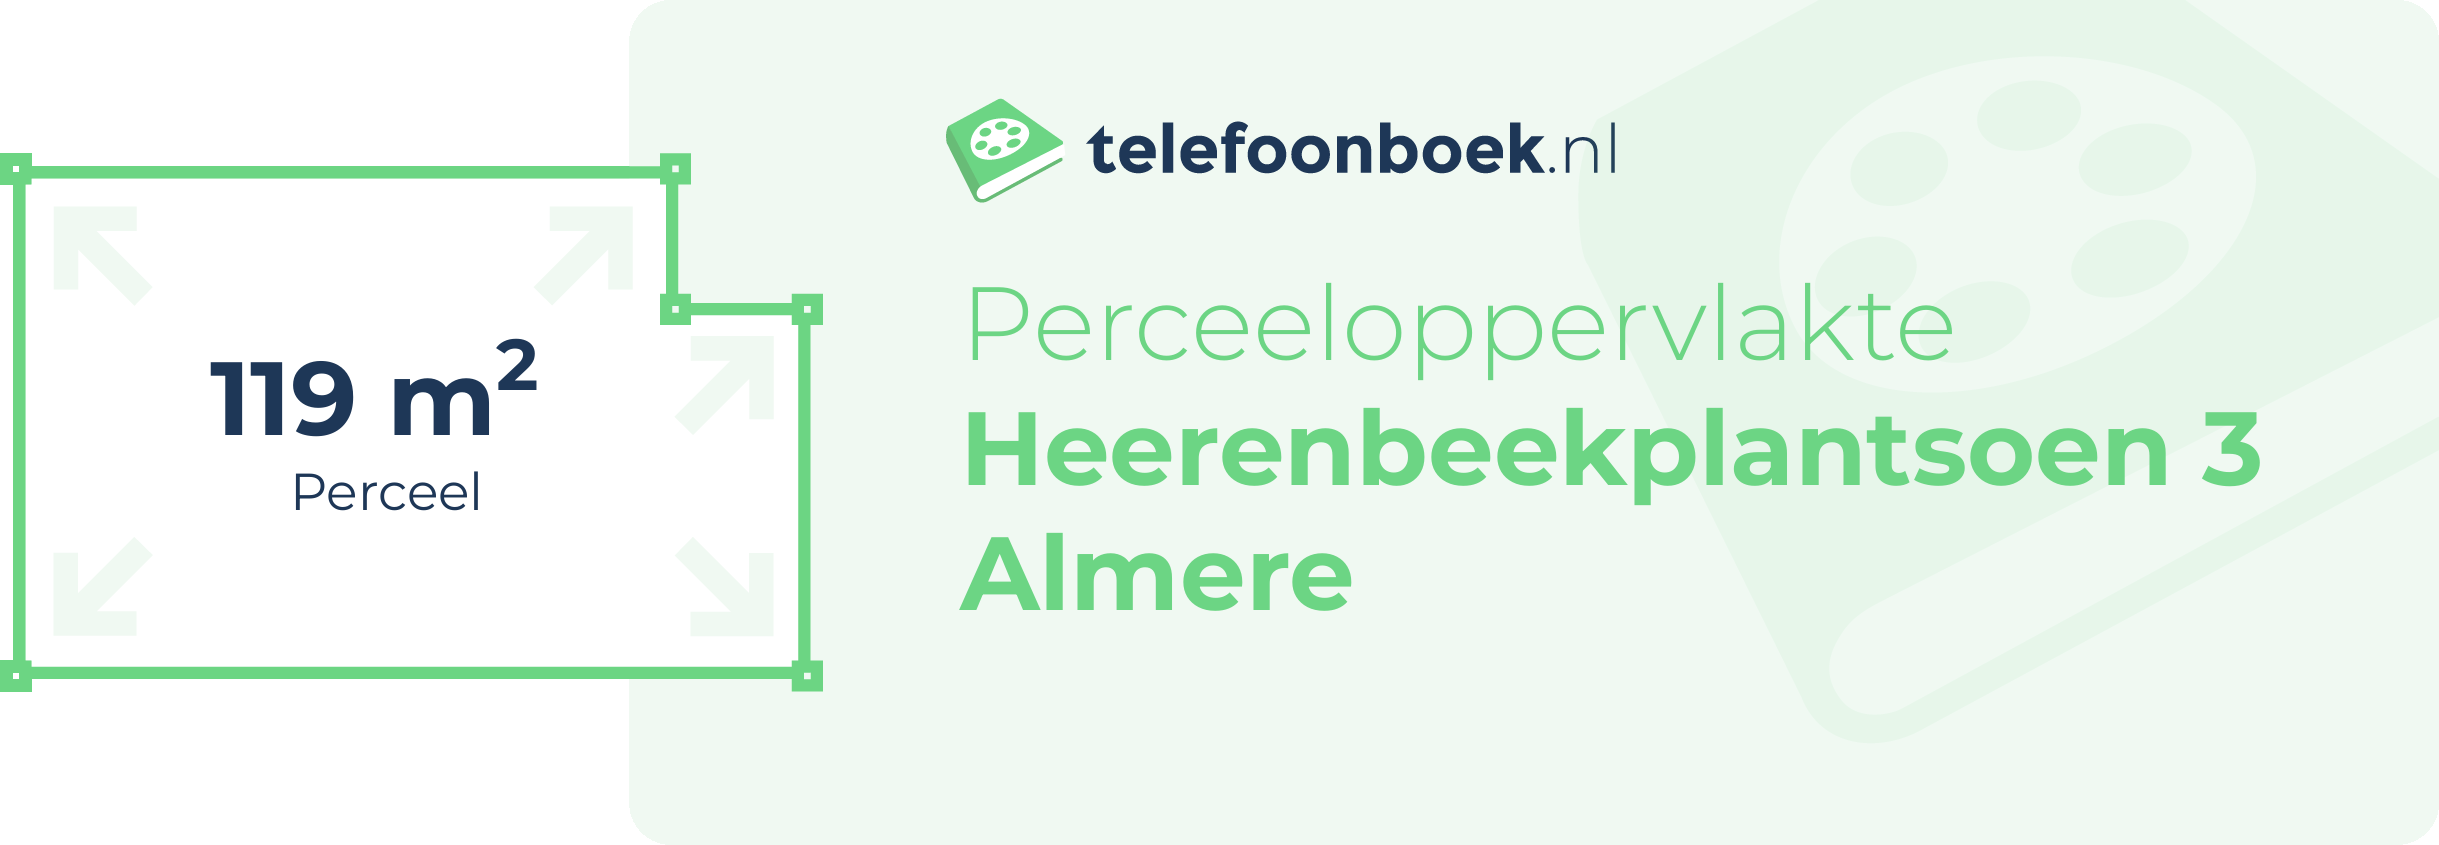 Perceeloppervlakte Heerenbeekplantsoen 3 Almere